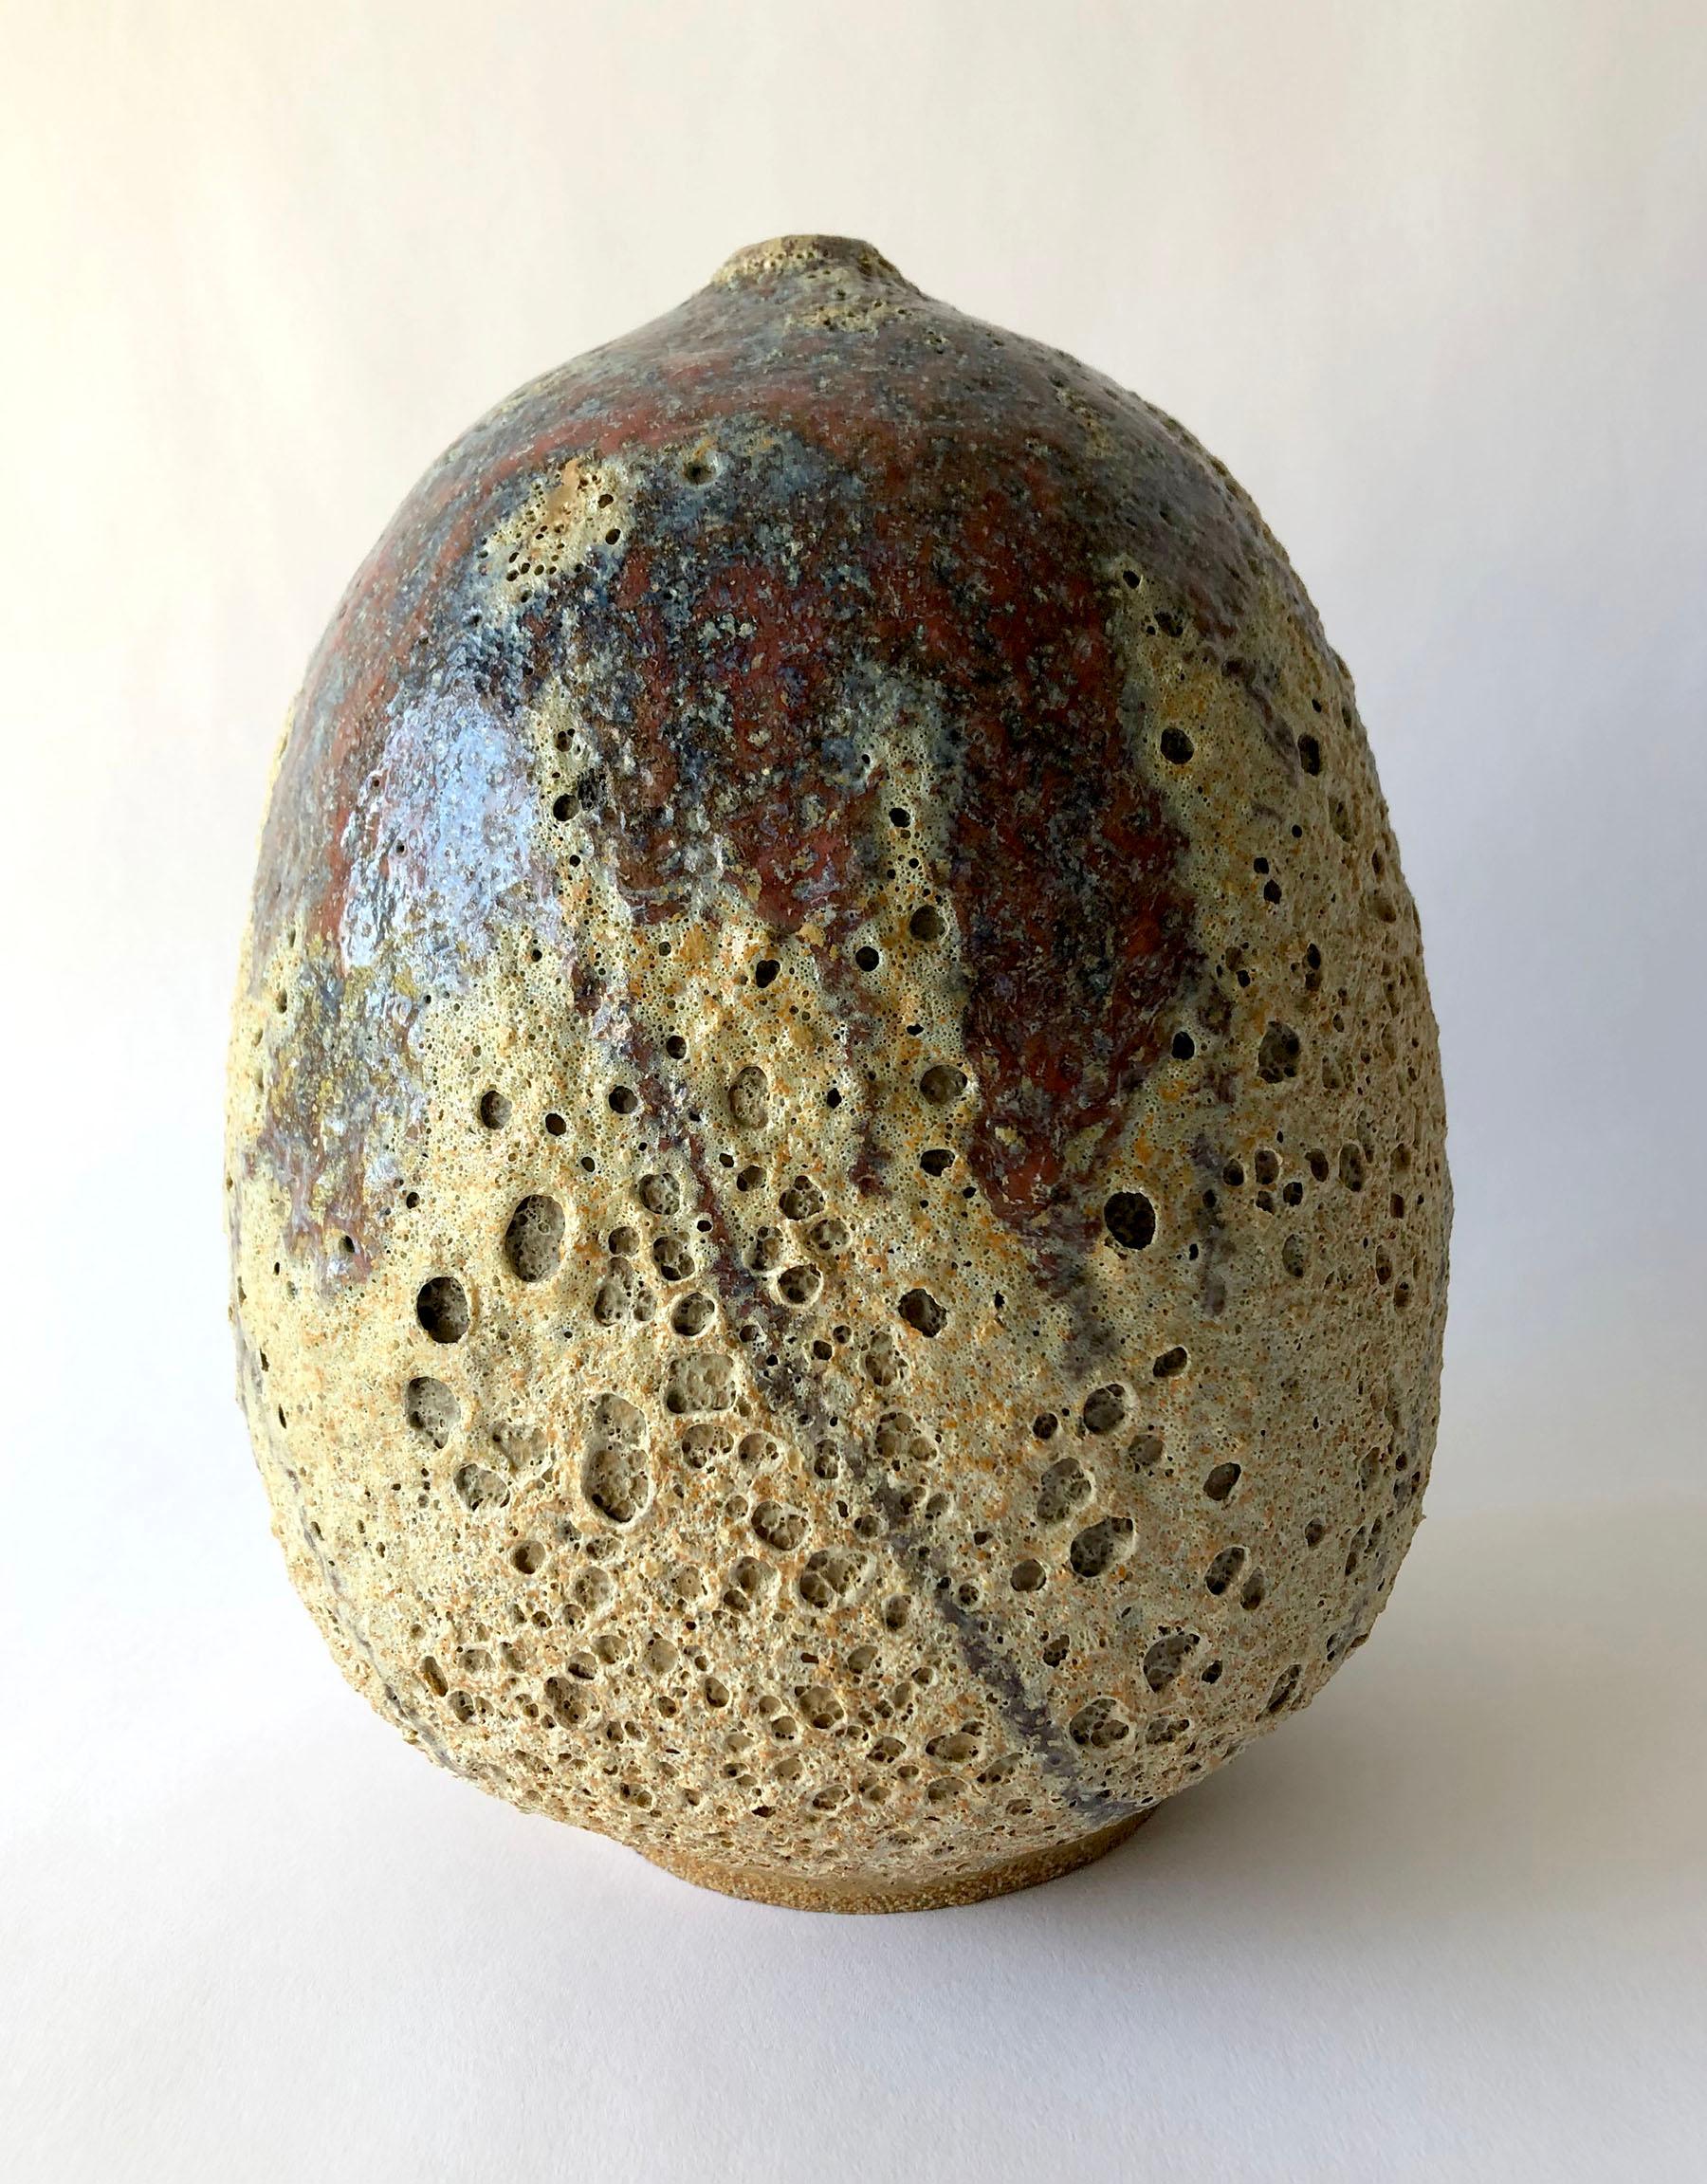 California Studio Keramik Vase mit schaumigen Glasur von Gerrit B. erstellt. Stück misst 8,5 